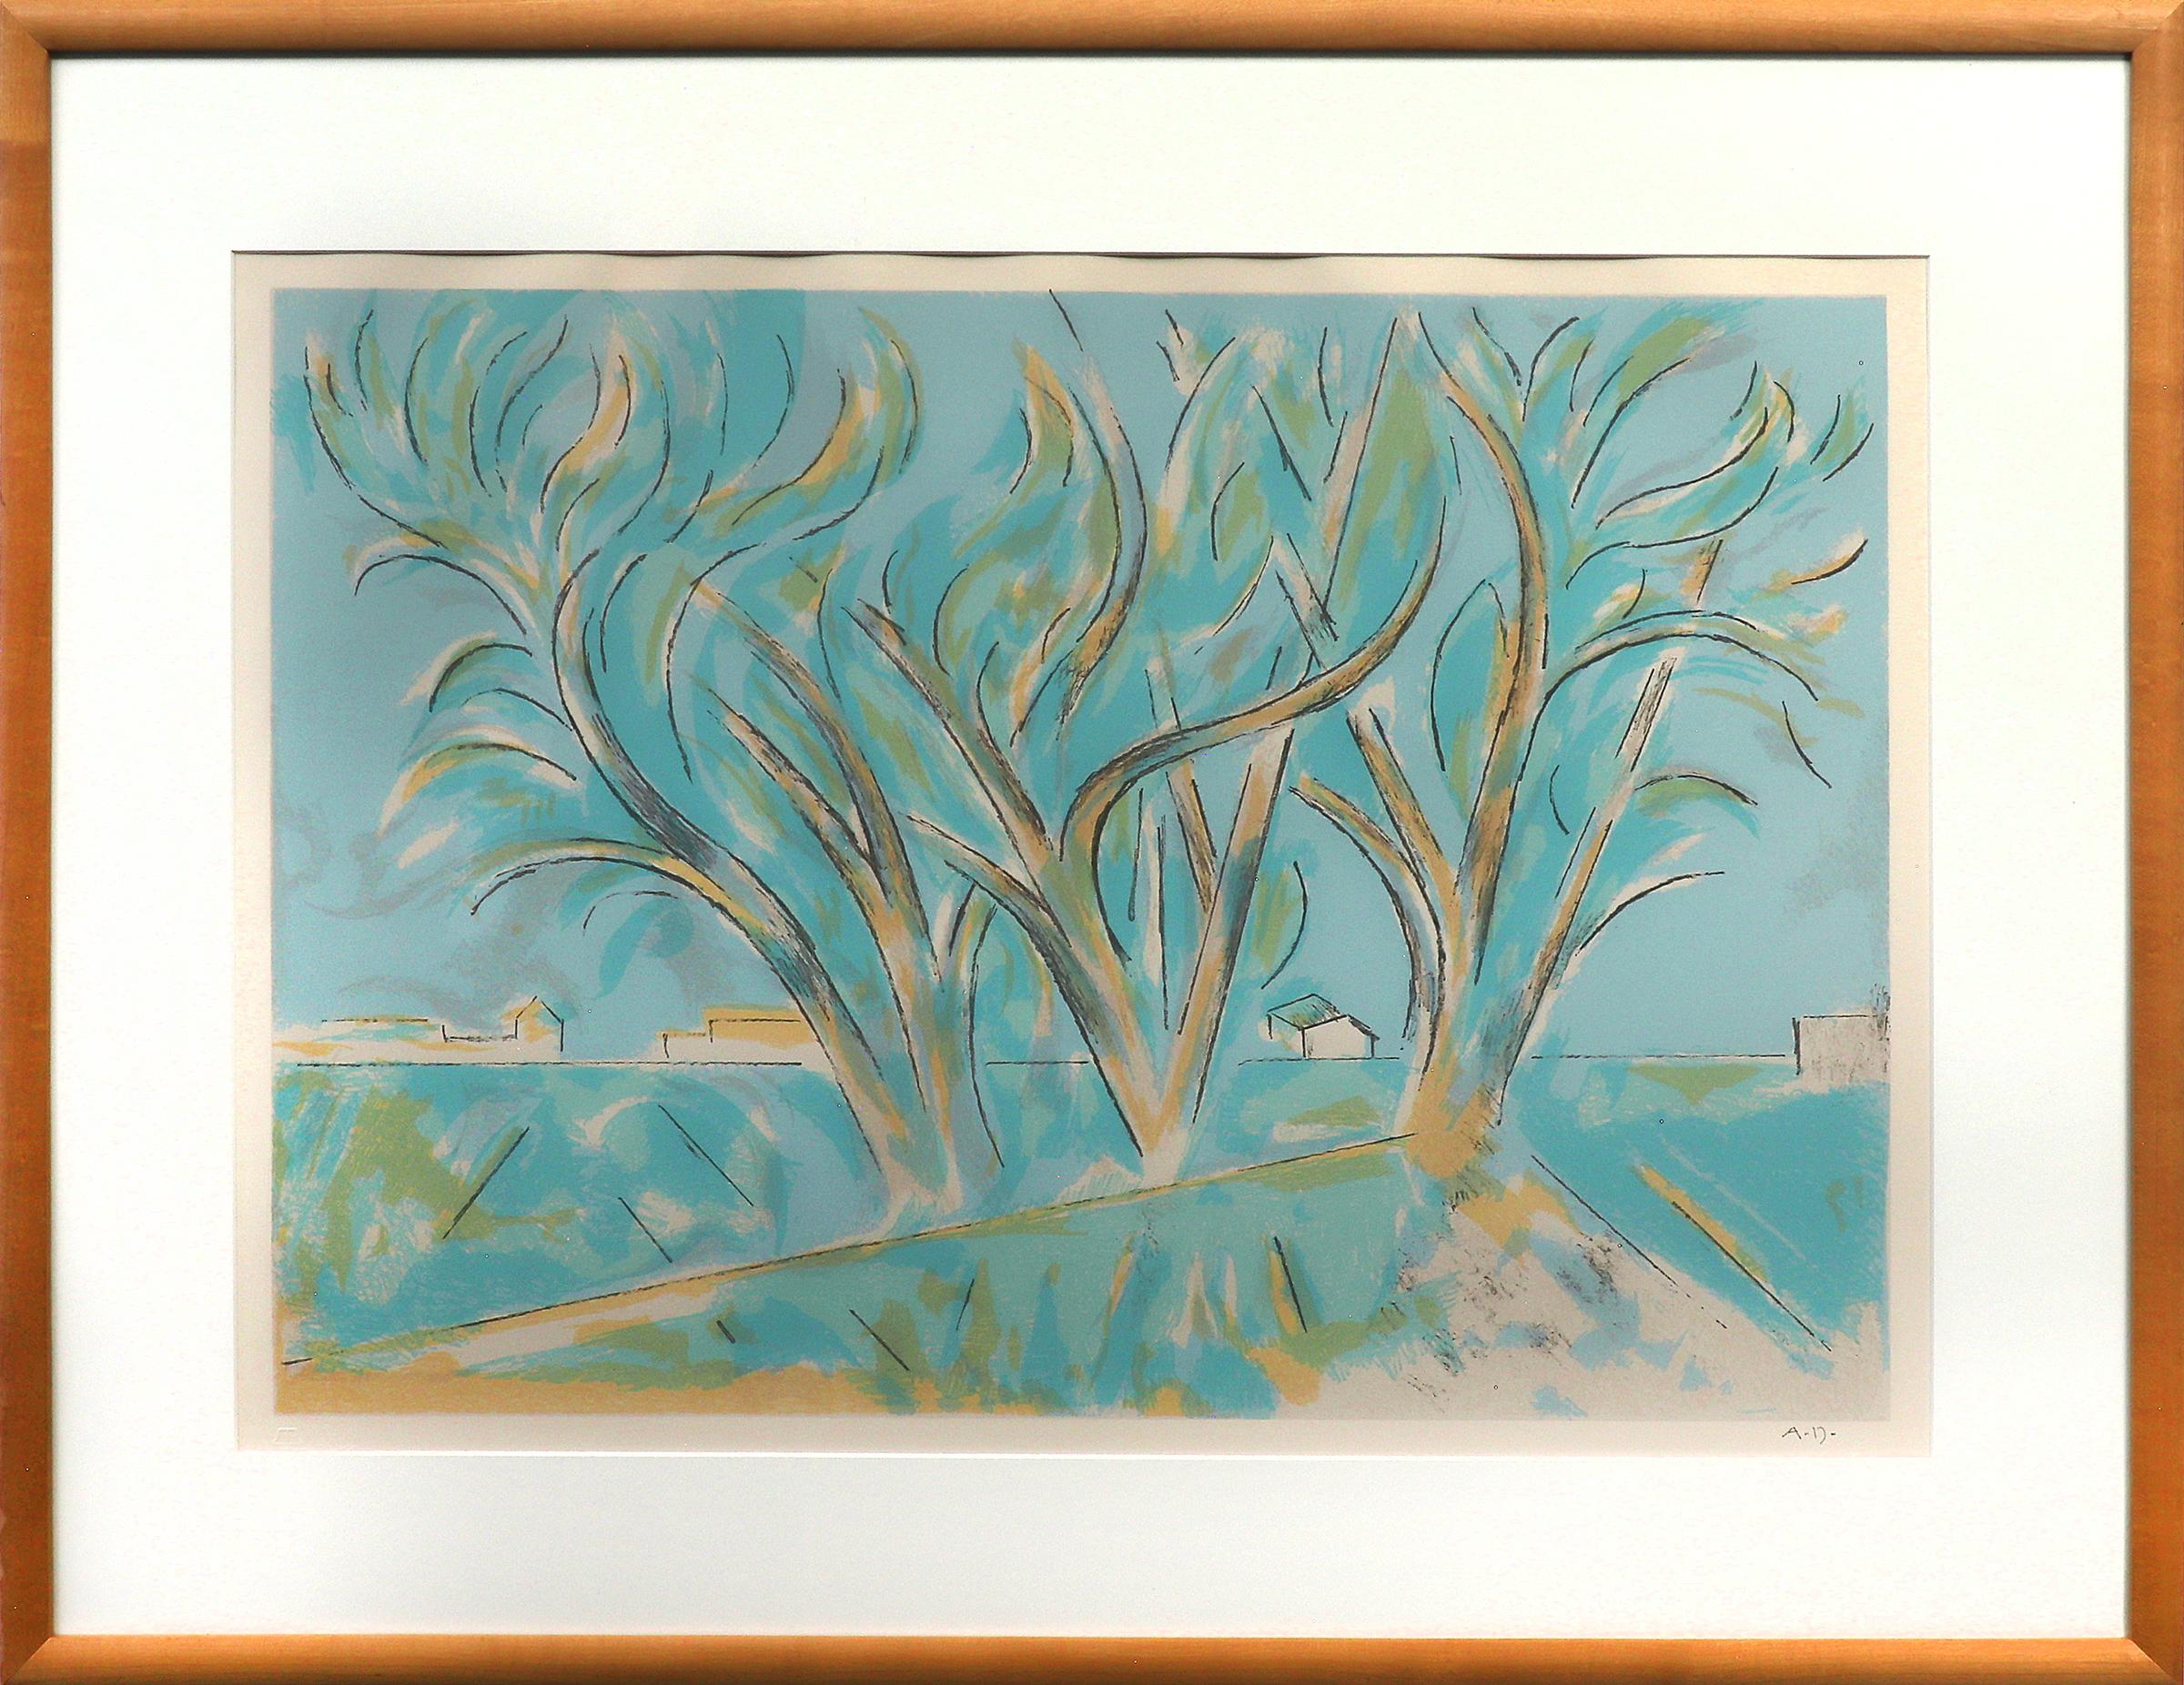 Andrew Michael Dasburg Landscape Print – Trees in Ranchitos II, New Mexico, 1970er Jahre, Farblithographie-Landschaft mit Bäumen